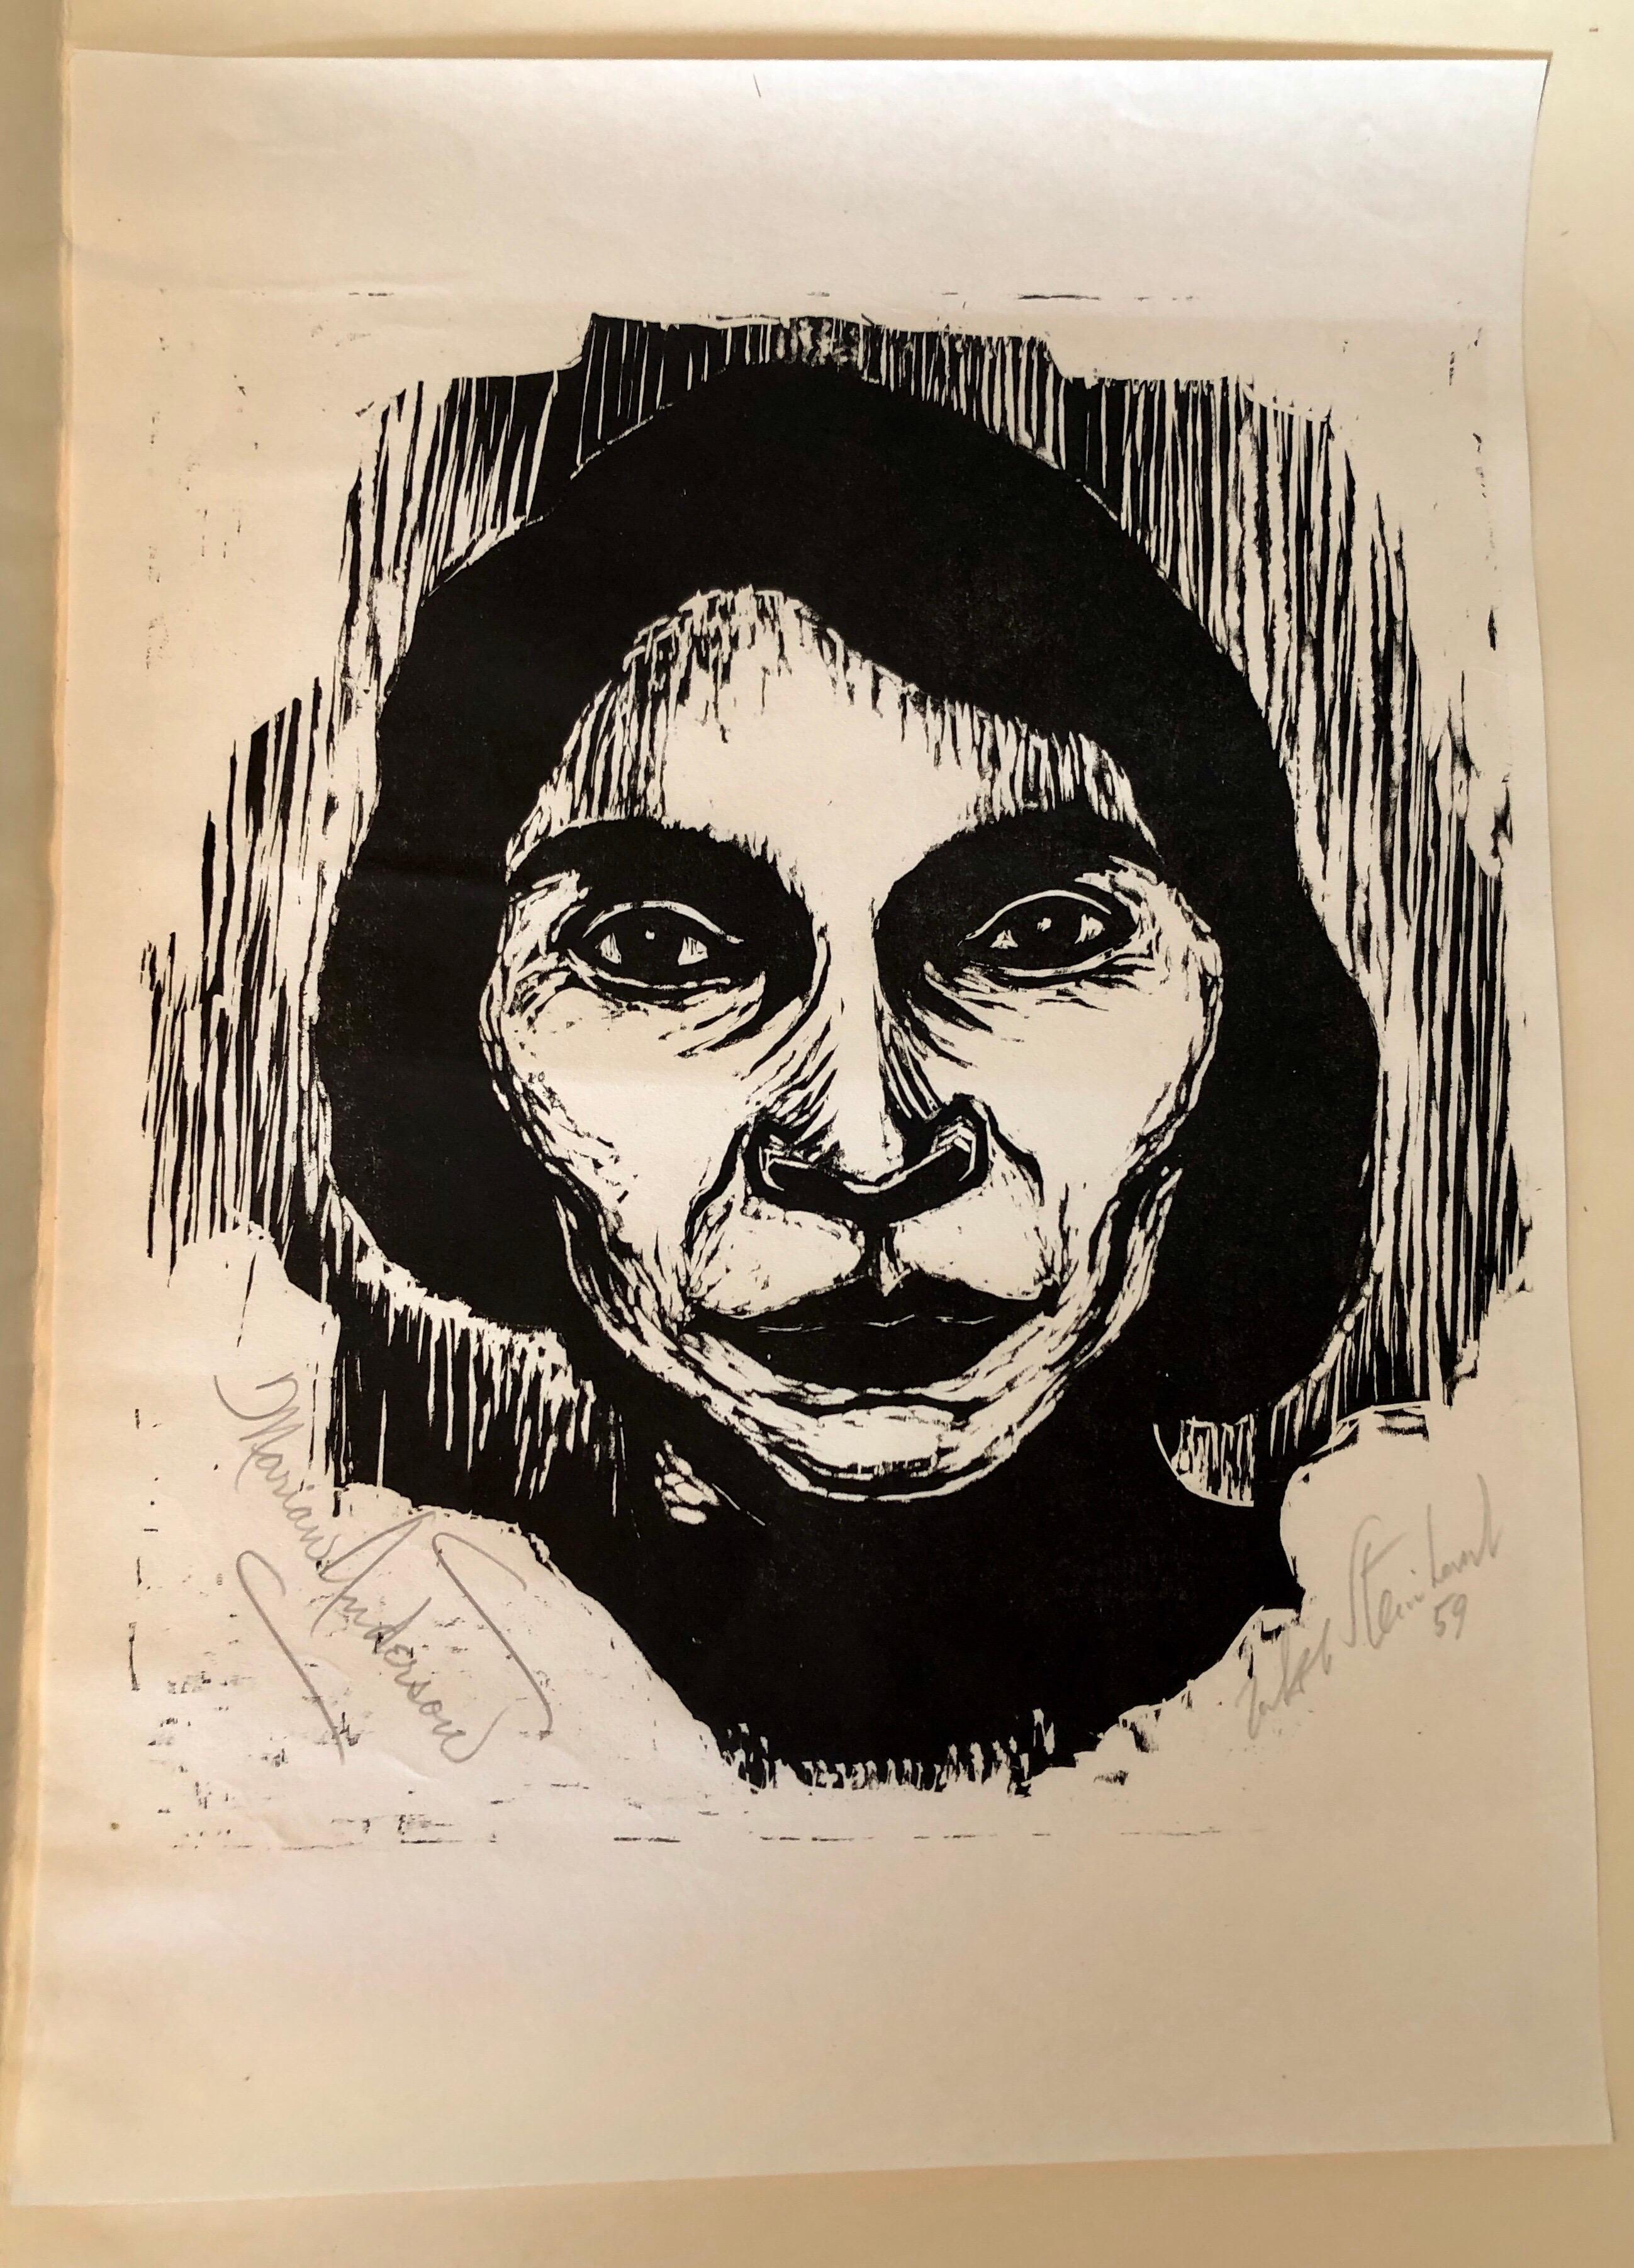 Steinhardt Holzschnitt Marian Anderson Signierte afroamerikanische, israelische Bezalel-Kunst 1